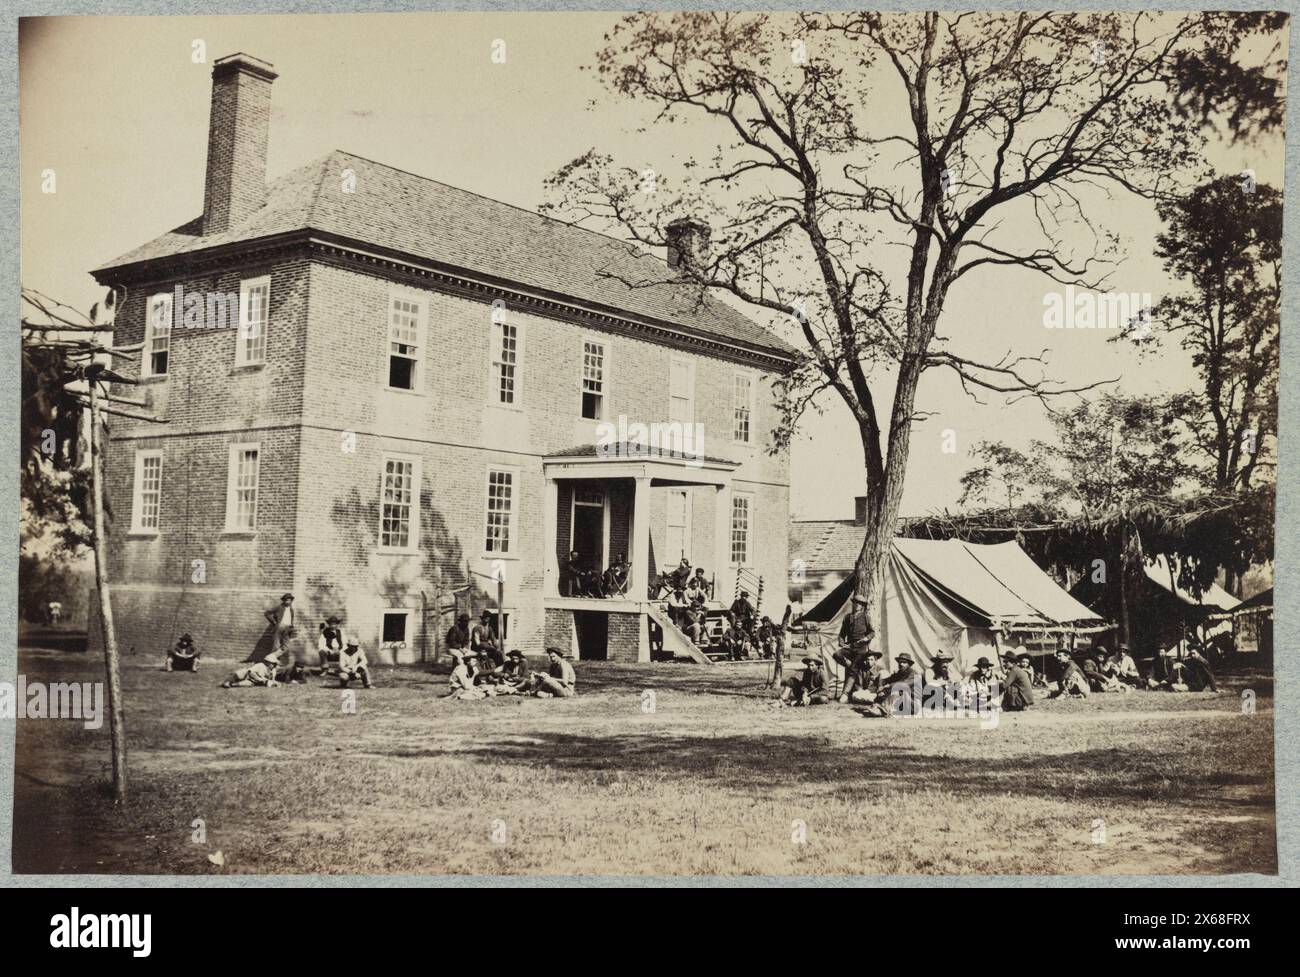 Casa di Bolling originariamente chiamata 'Mitchell's' (in seguito 'Bull Hill'), probabilmente situata a Hopewell, Virginia, fotografie della Guerra civile 1861-1865 Foto Stock